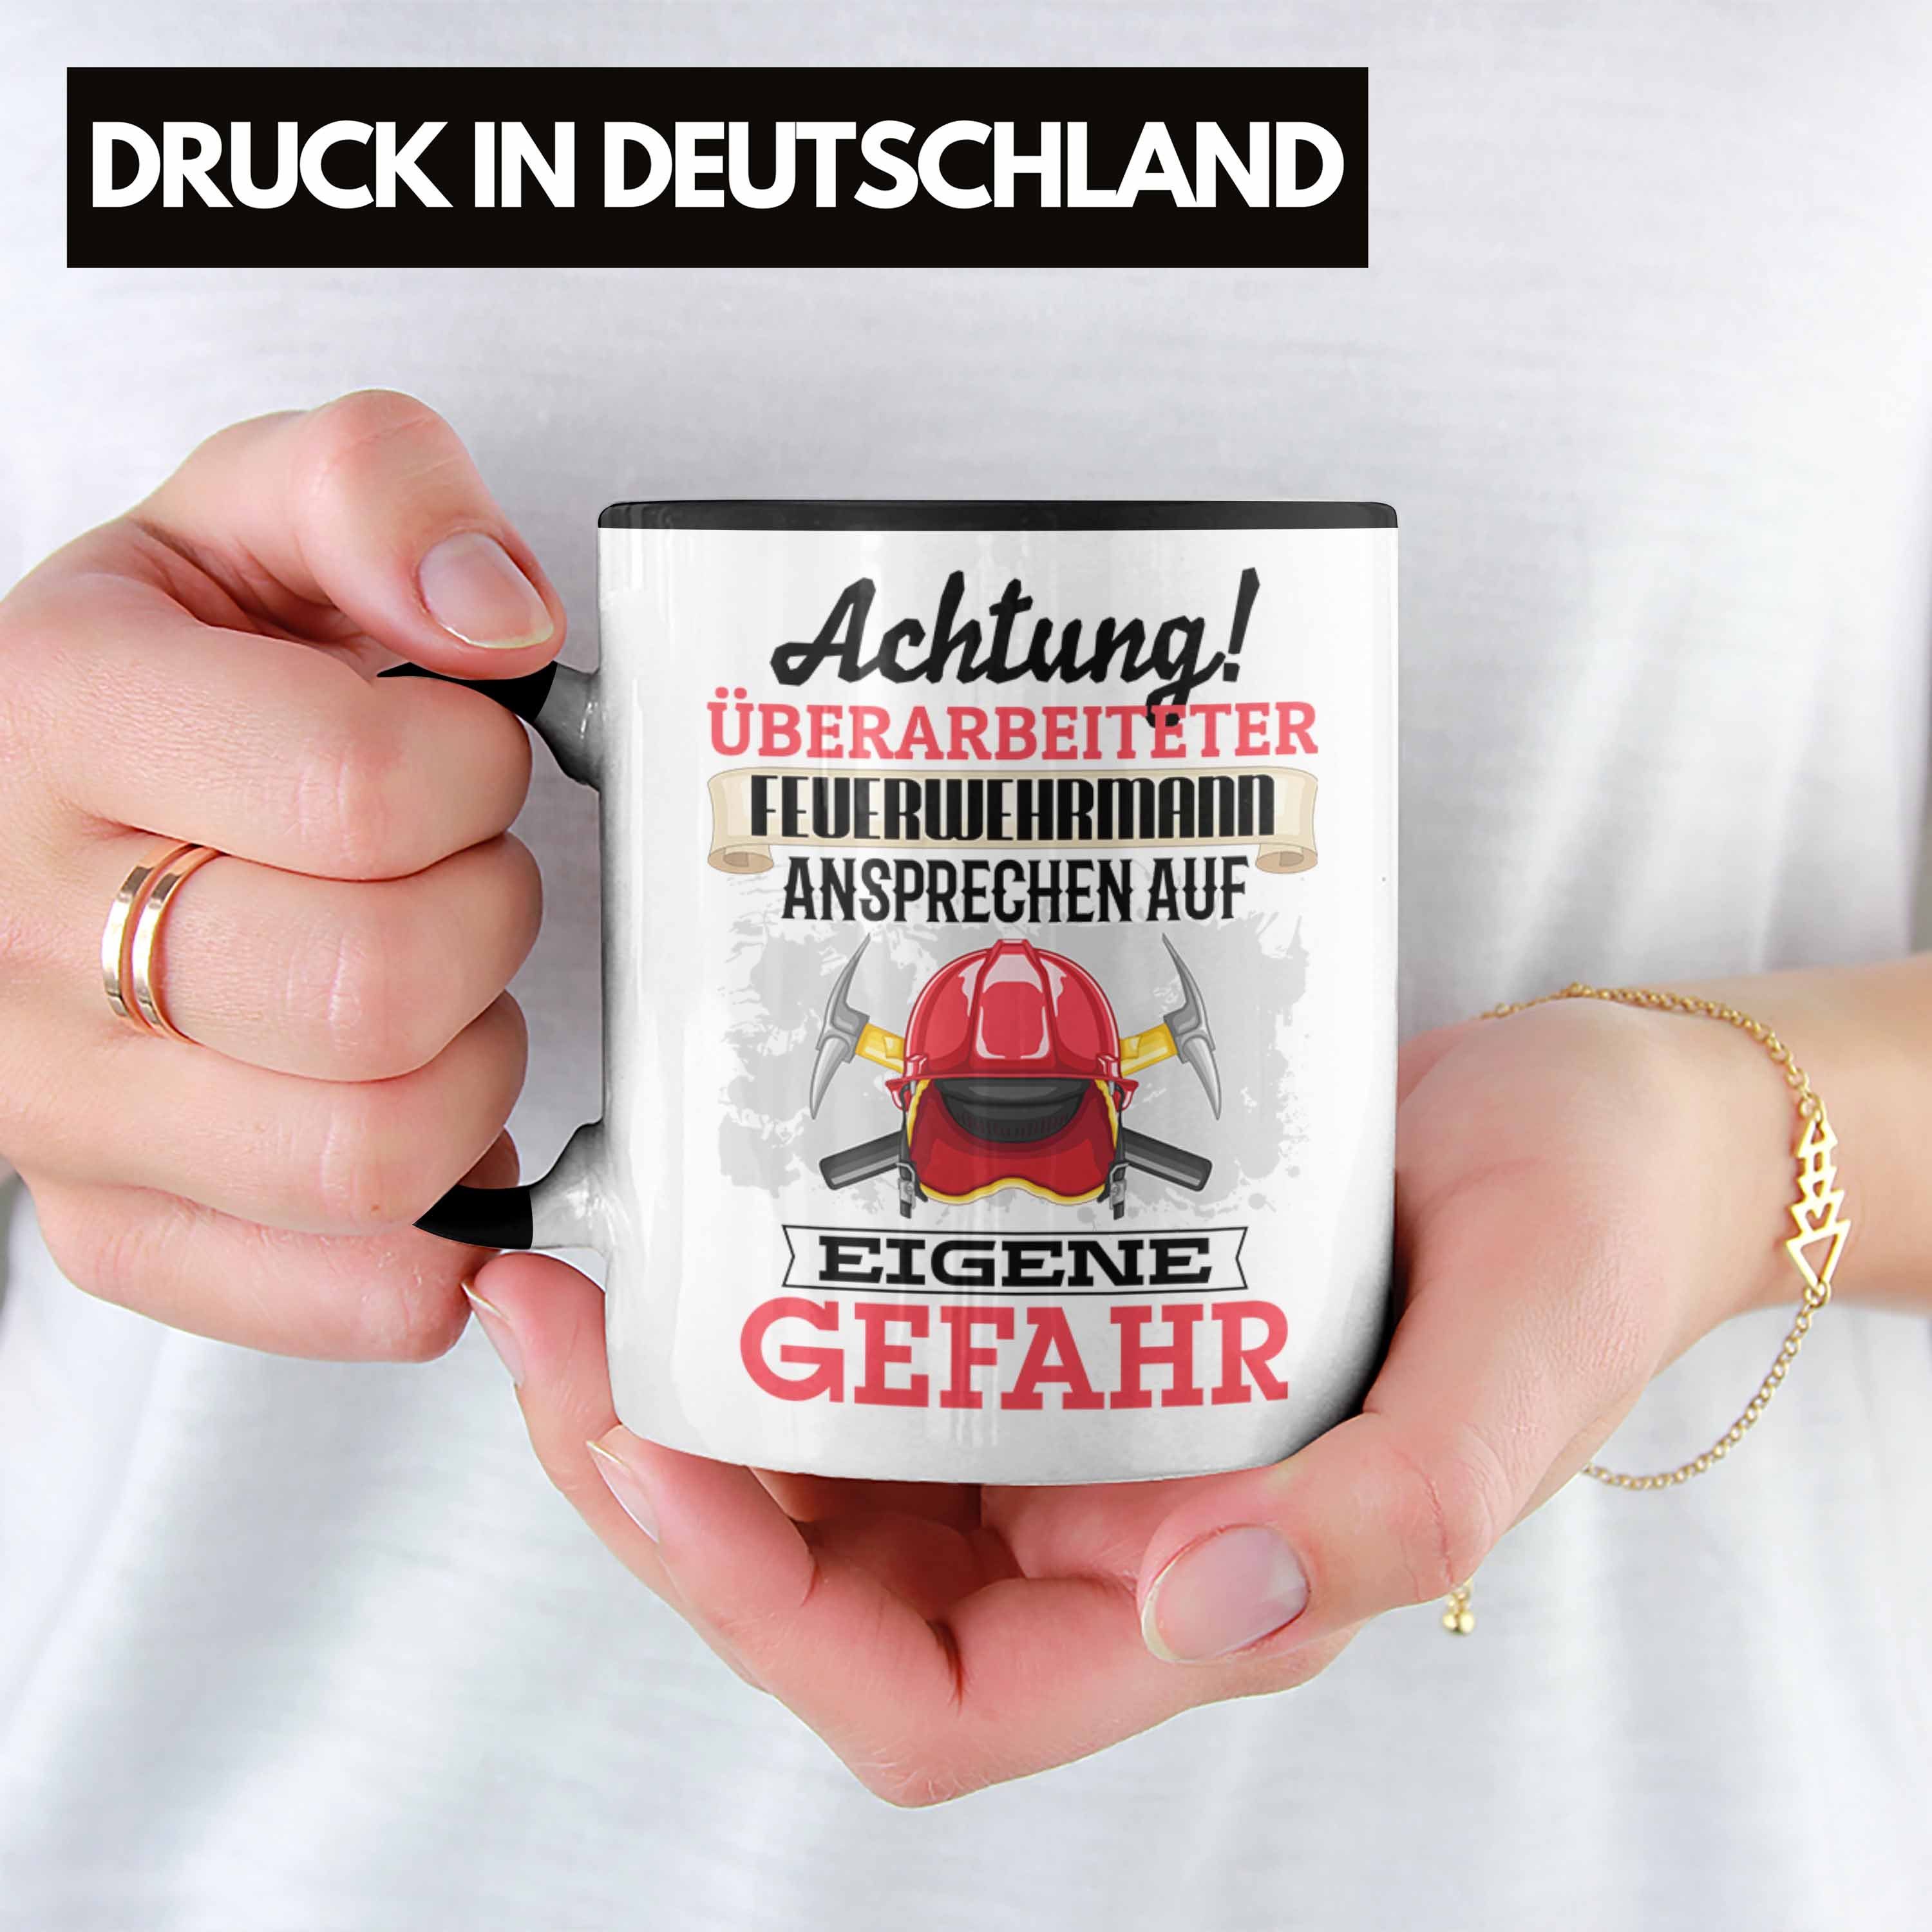 Trendation Tasse Feuerwehrmann Tasse Geschenk Geschenkidee Kaffeebecher Spruch Lustiger Schwarz